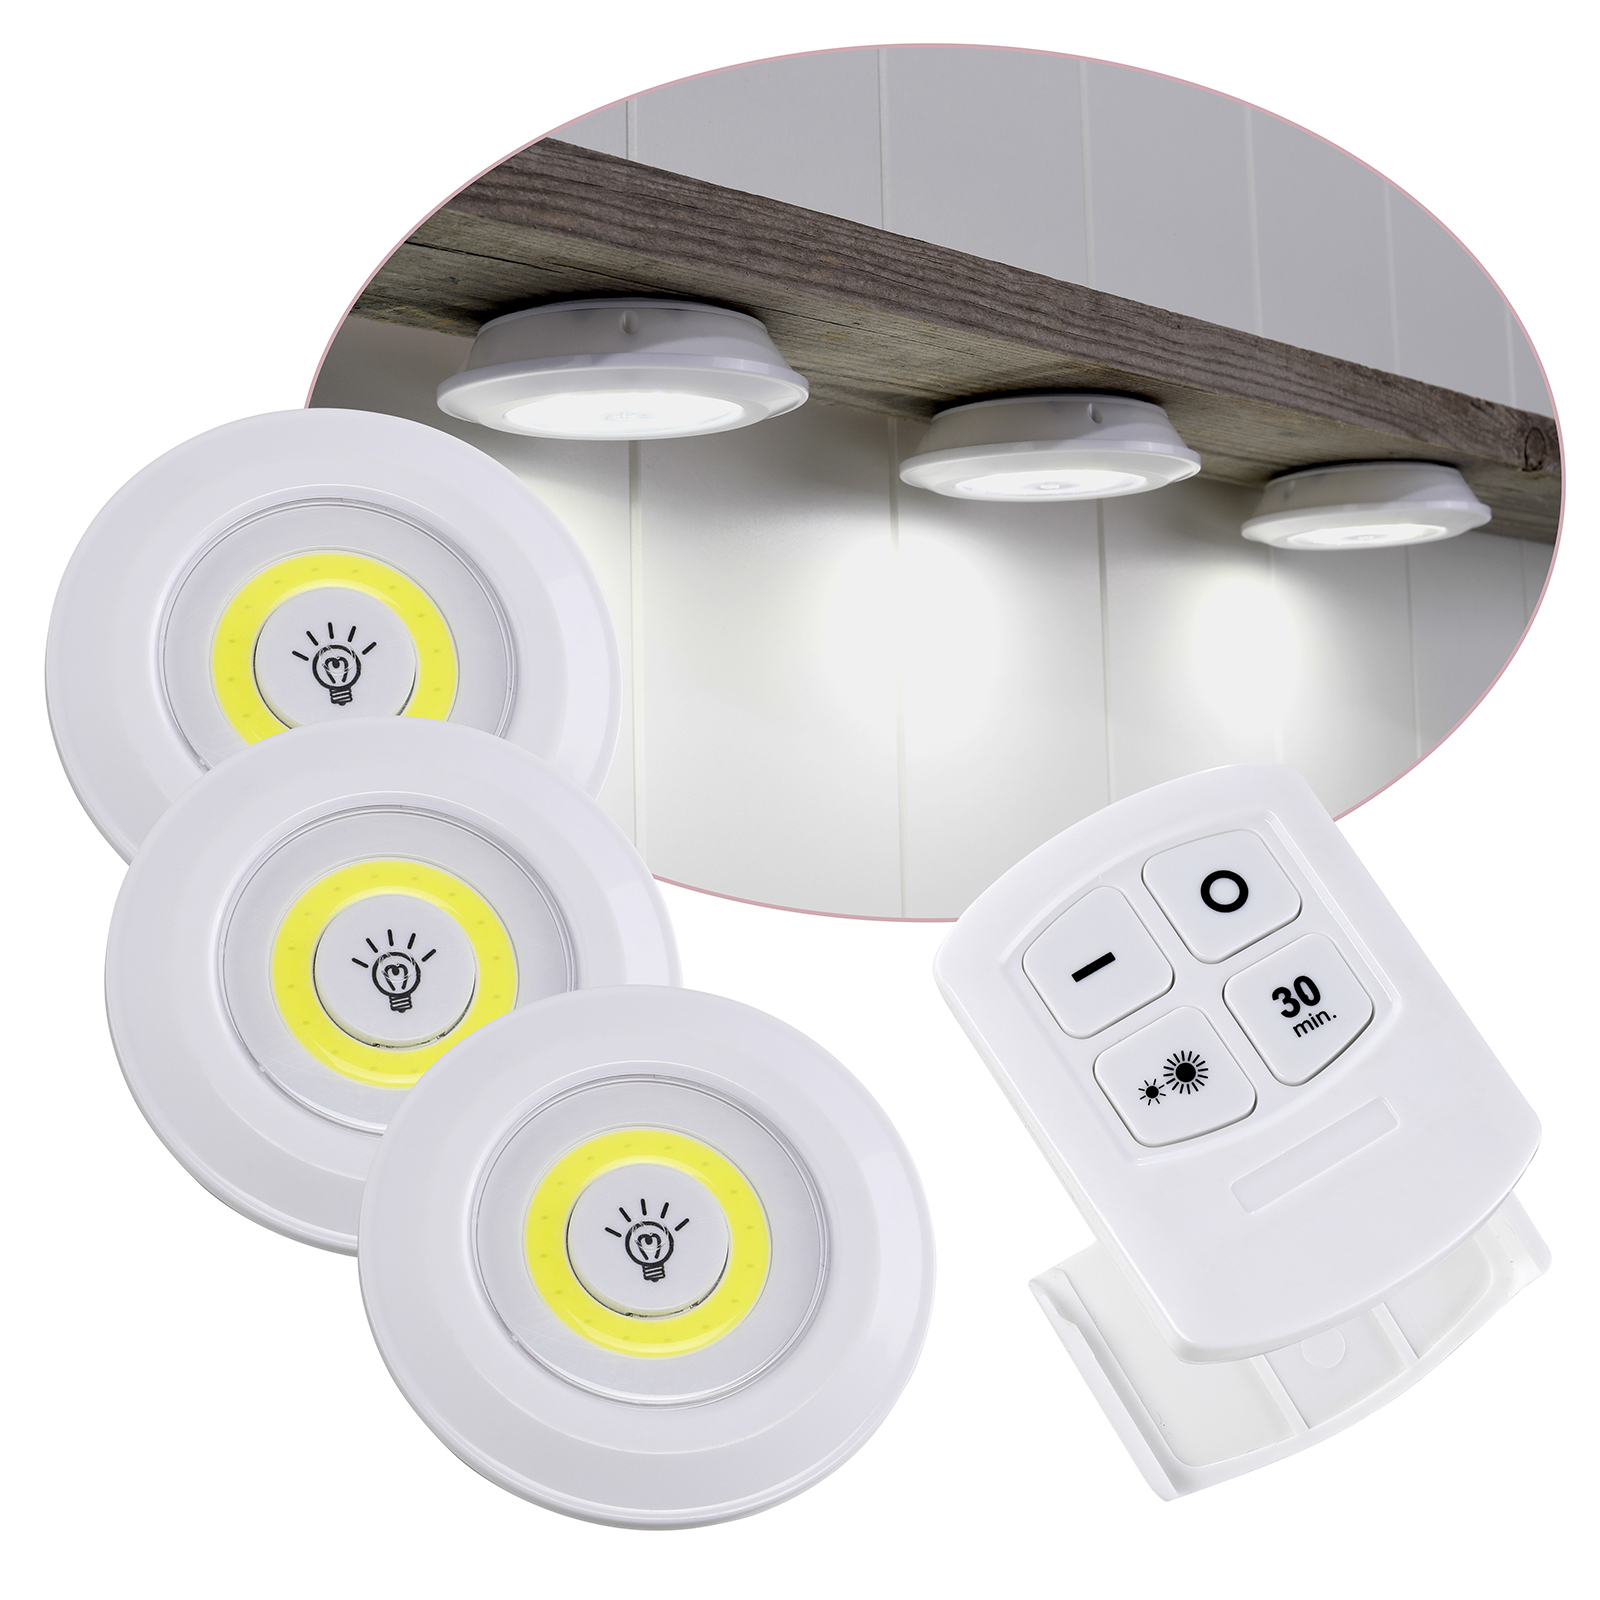 LED Lampe Leuchte Schranklicht Unterbauleuchte Fernbedienung batteriebetrieben 